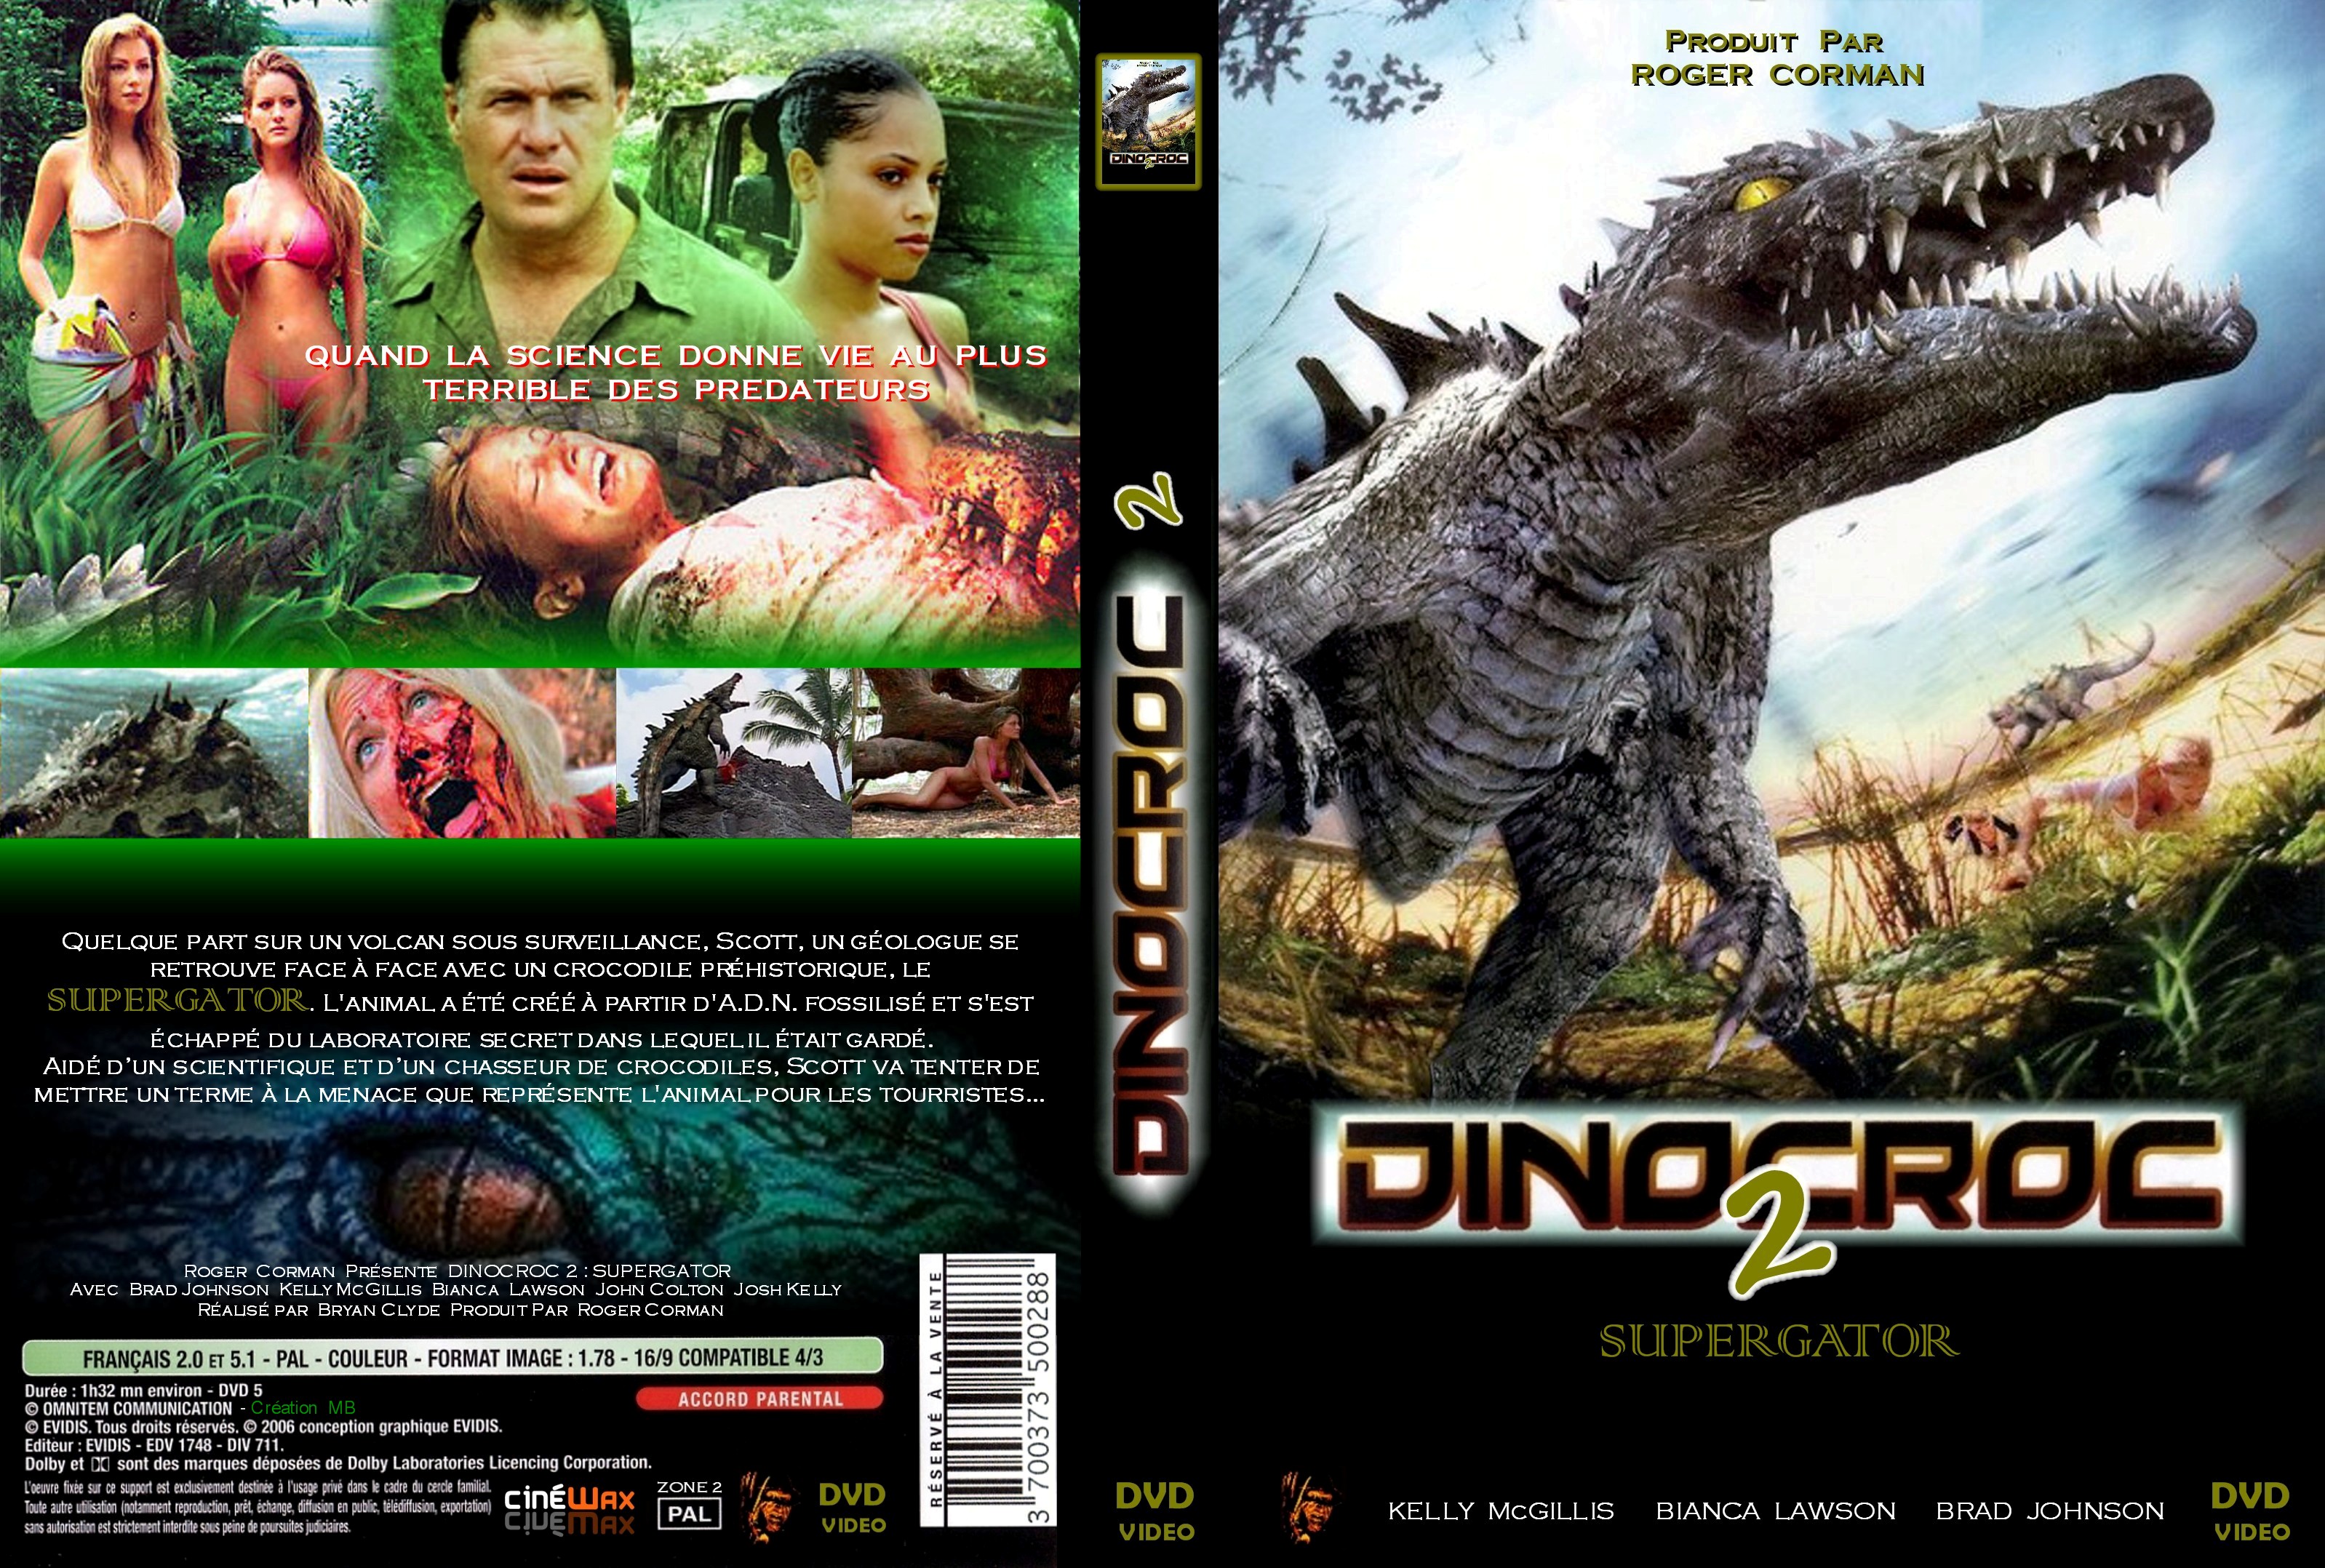 Jaquette DVD Dinocroc 2 Supergator custom